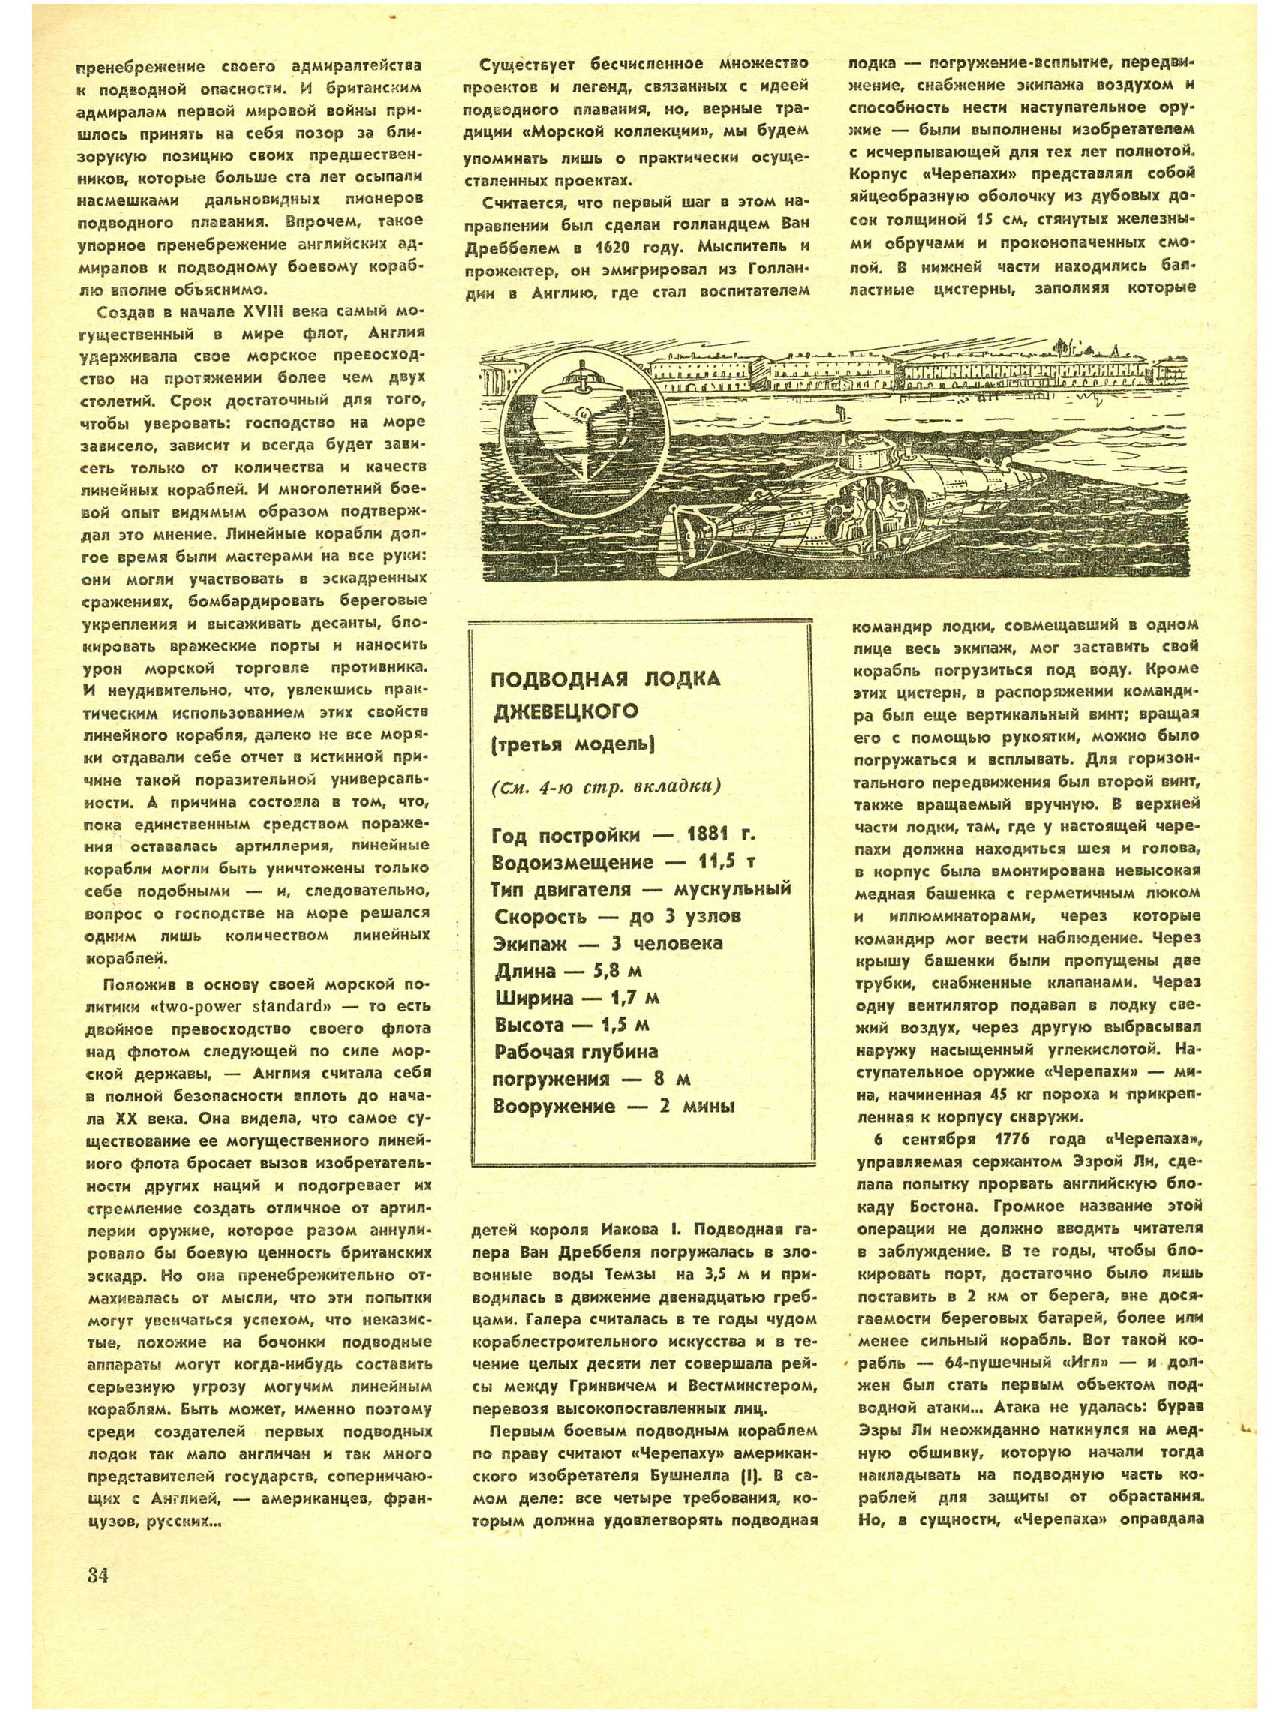 МК 10, 1973, 34 c.